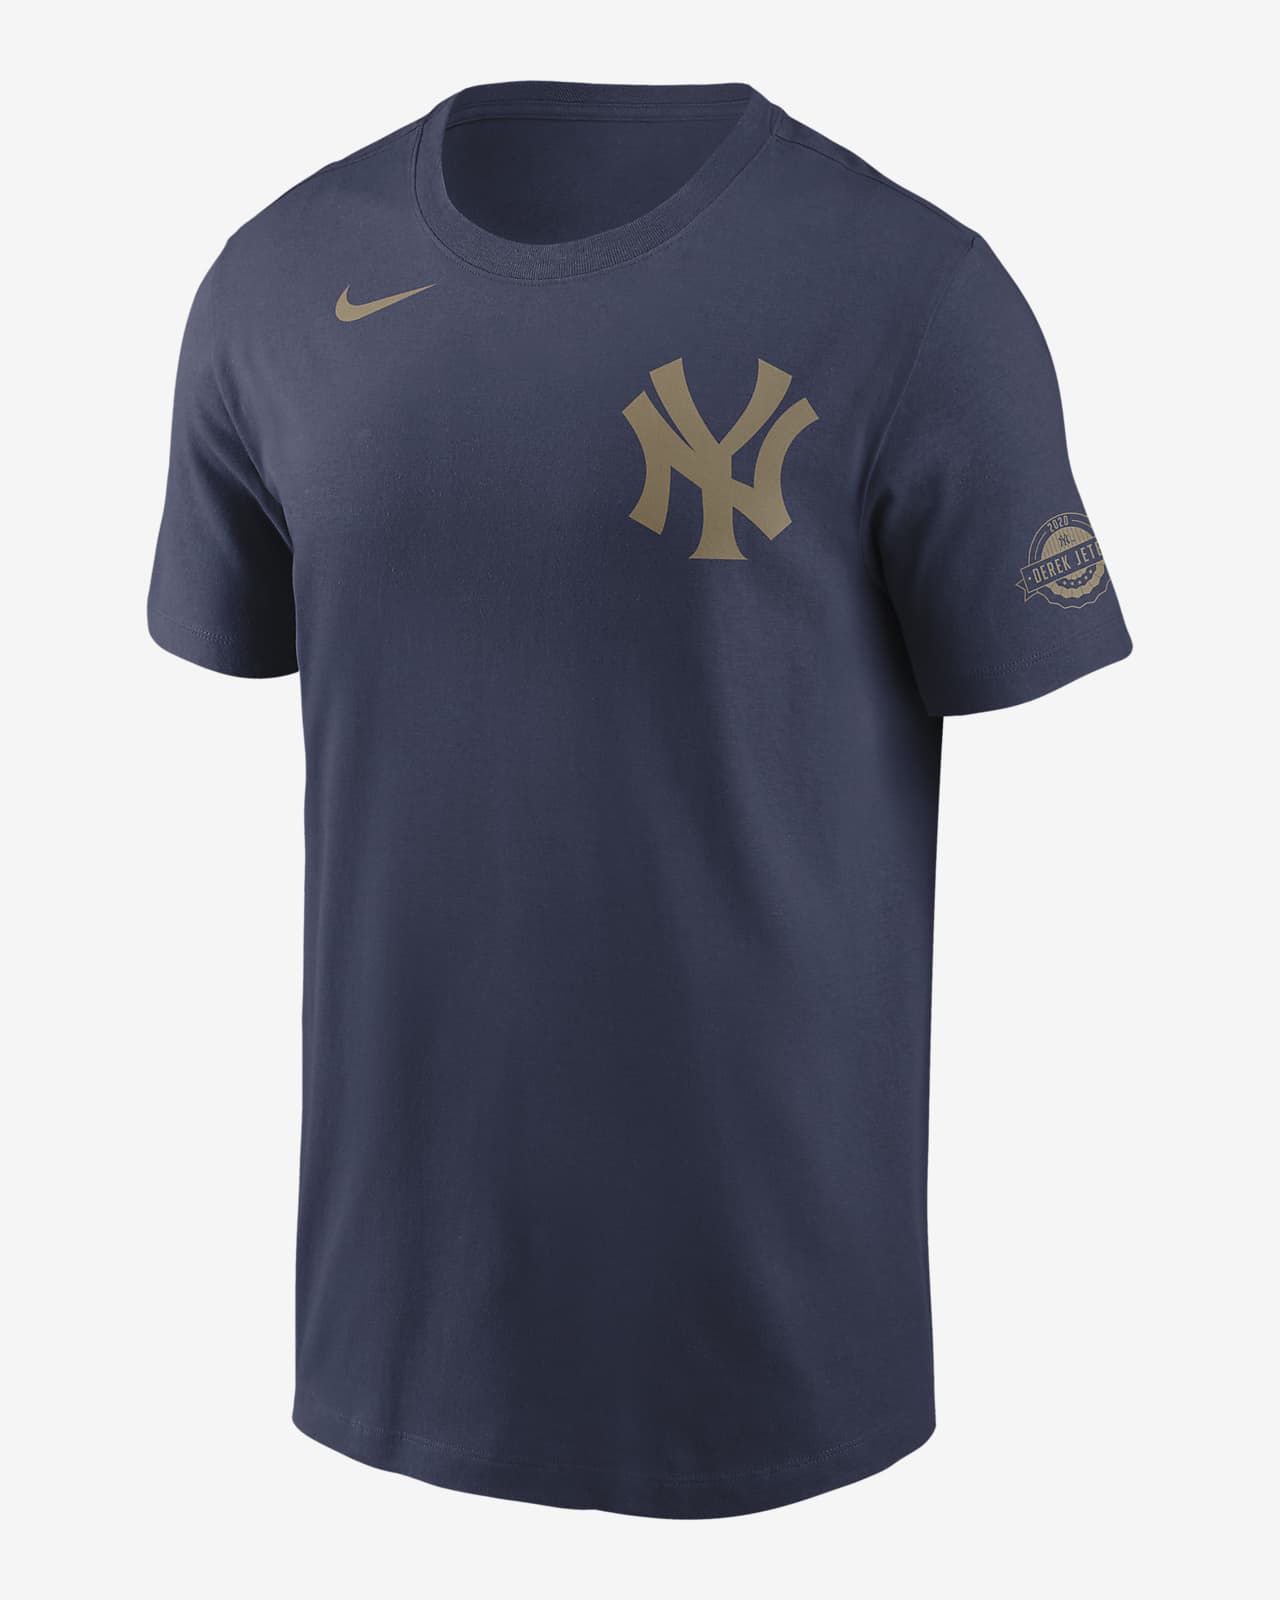 MLB New York Yankees (Derek Jeter) Men's T-Shirt